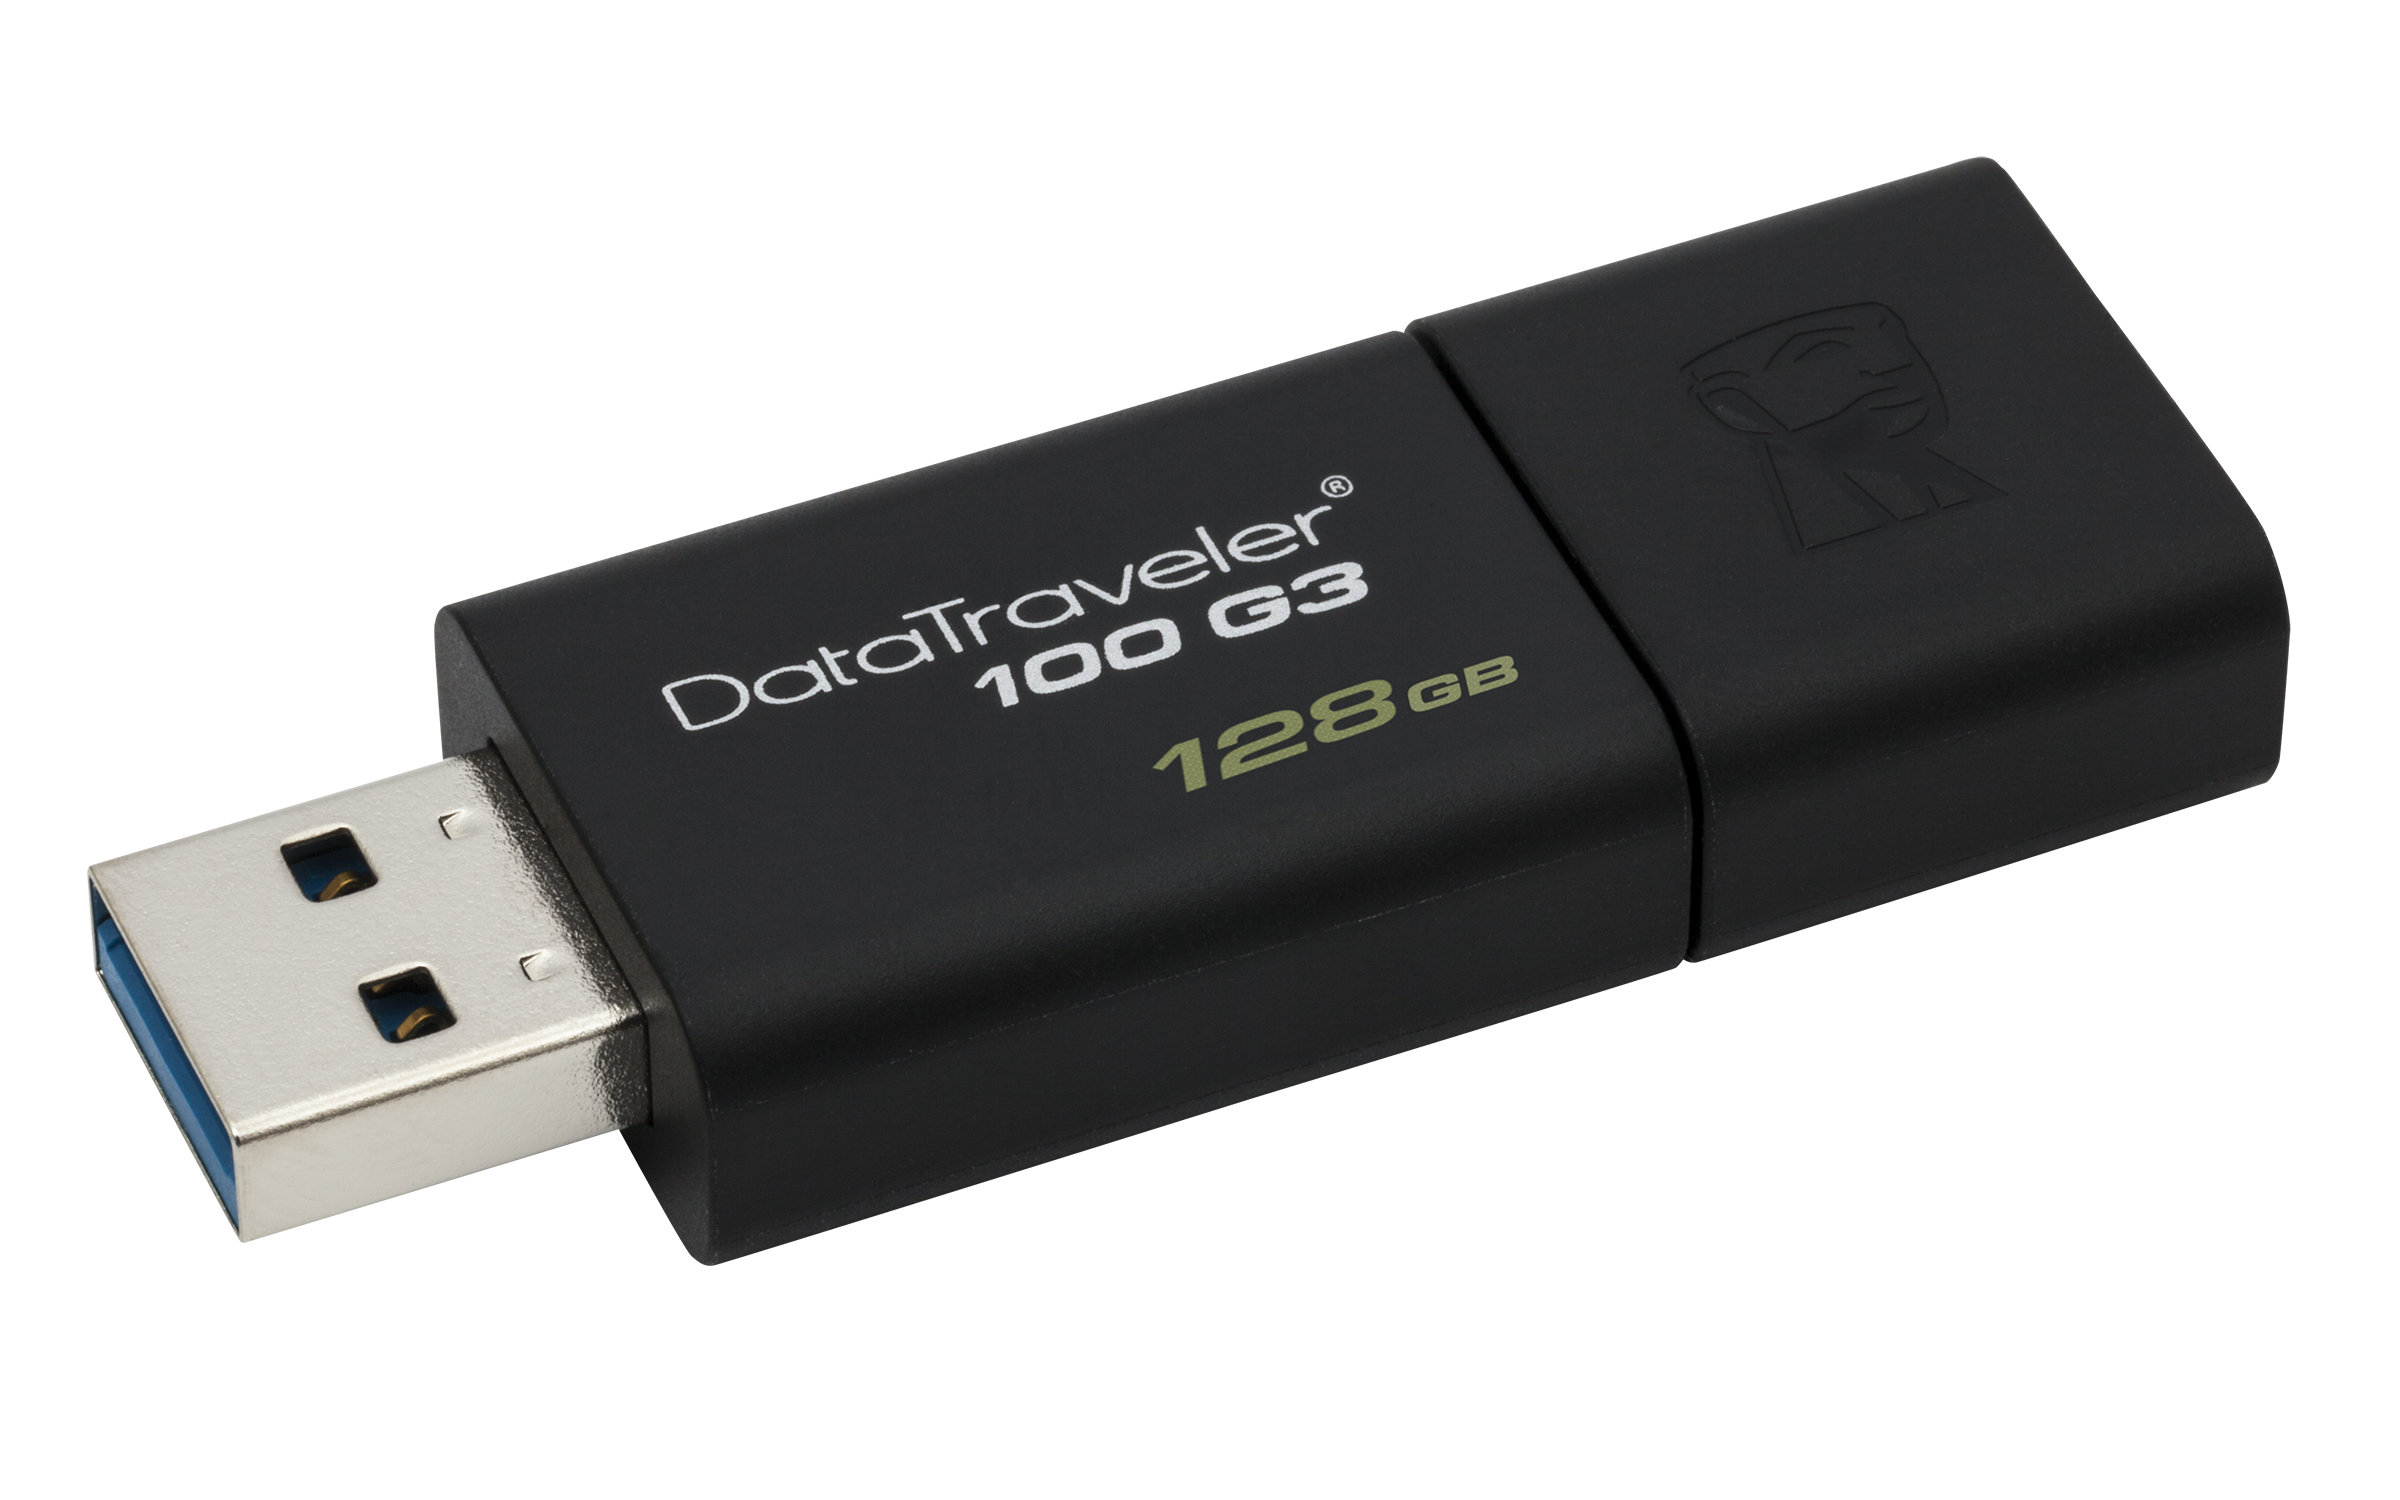 USB Kingston DT100G3/128GB USB 128GB 3.0 DataTraveler 100 G3